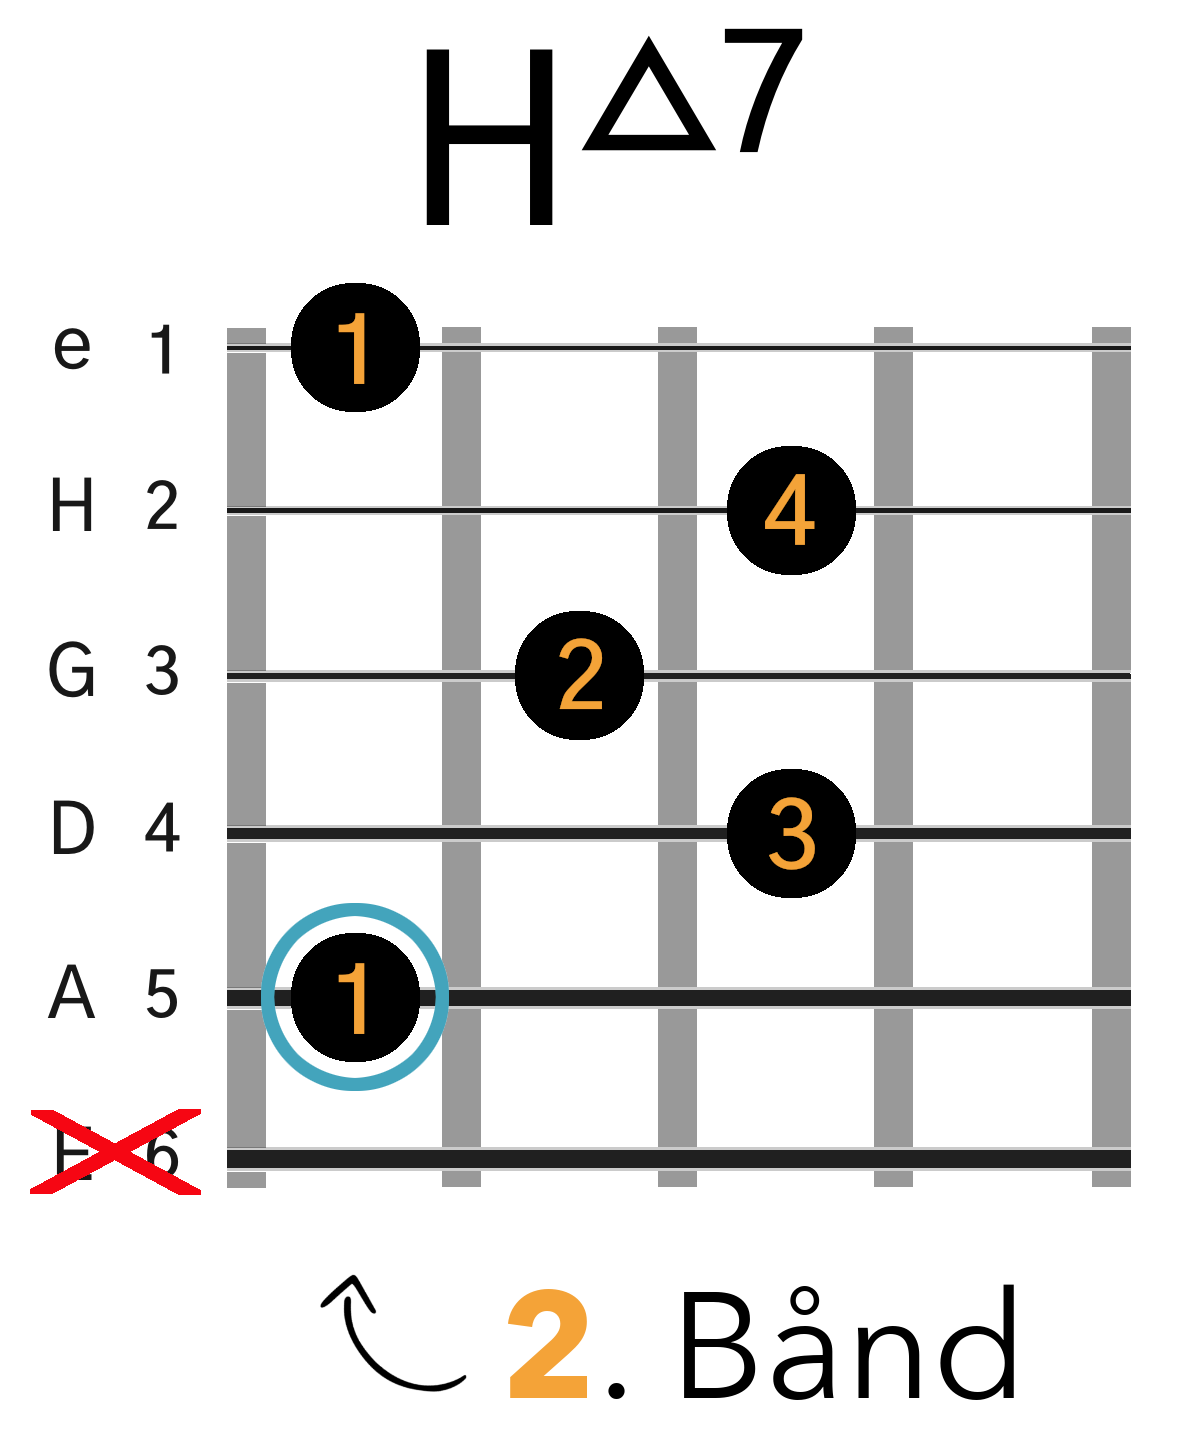 Grafik af hvordan man tager en Hmaj7 (Bmaj7) barré akkord (A-form) på guitar